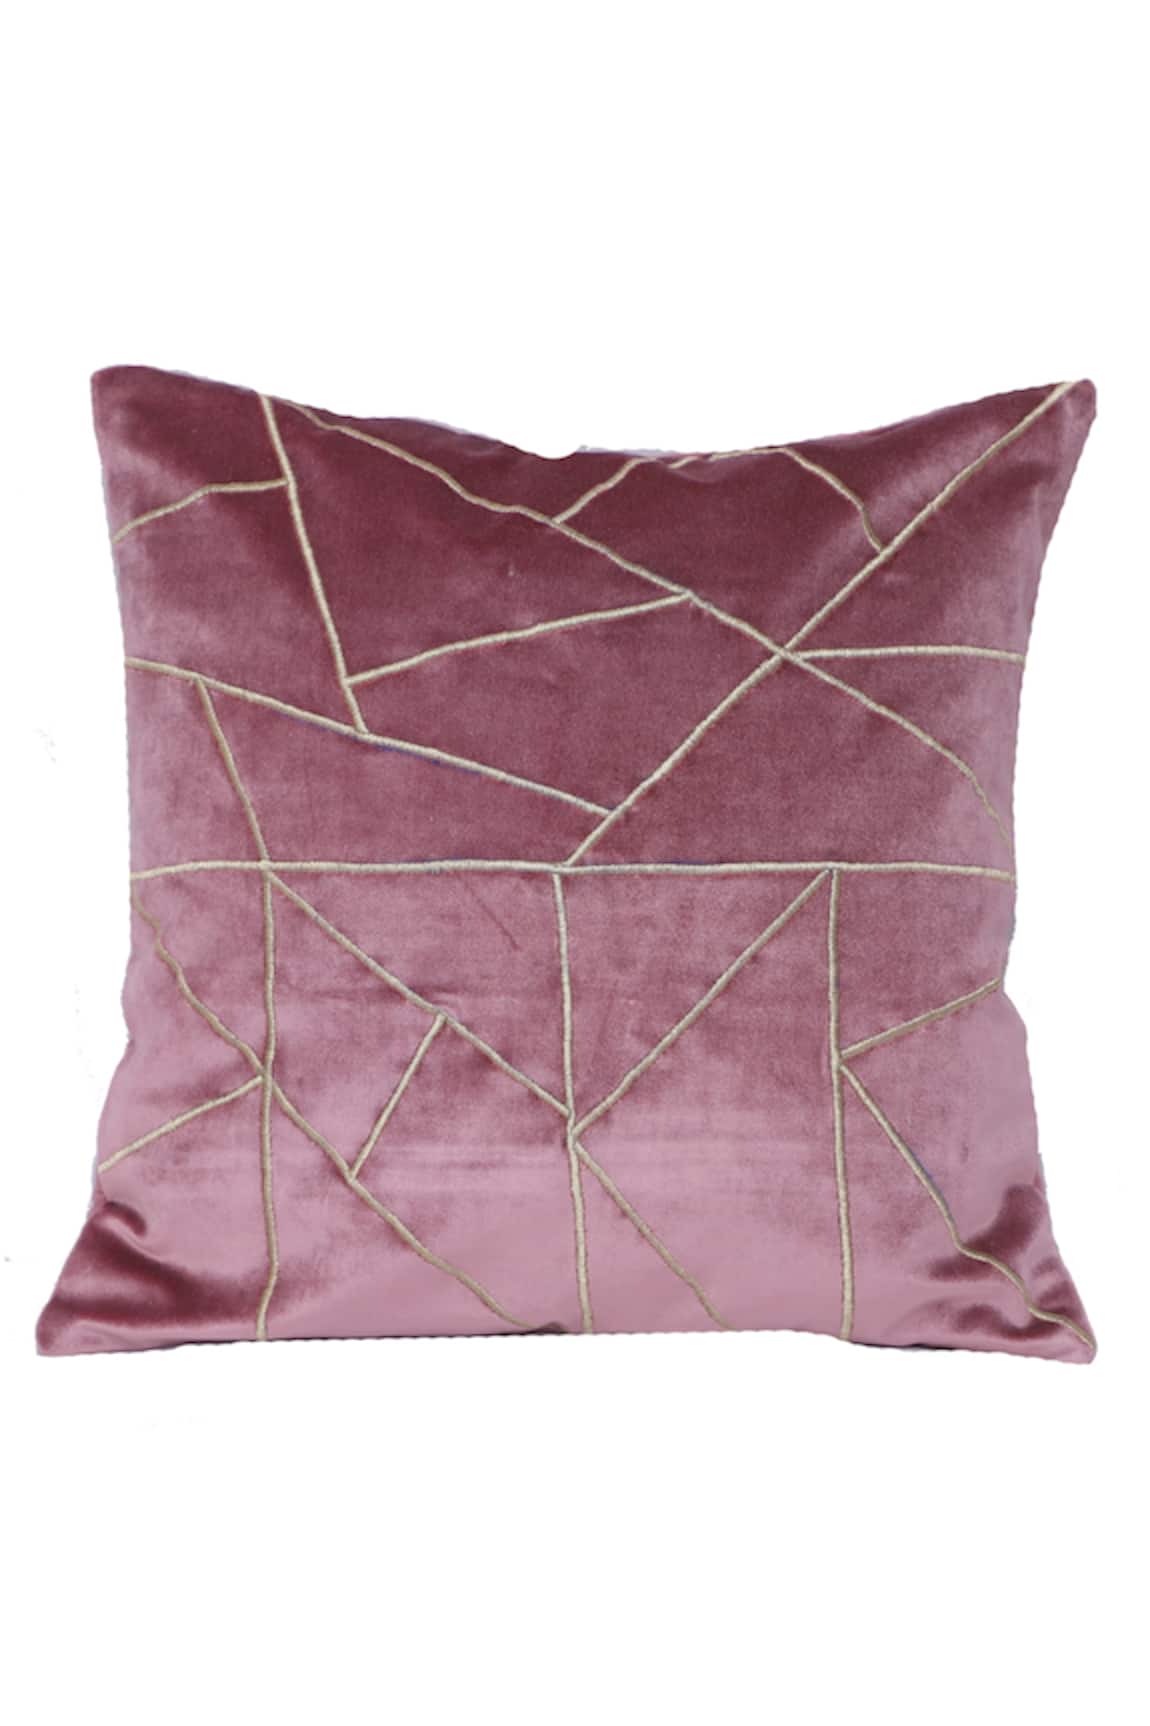 La Paloma Velvet Square Shaped Cushion Cover